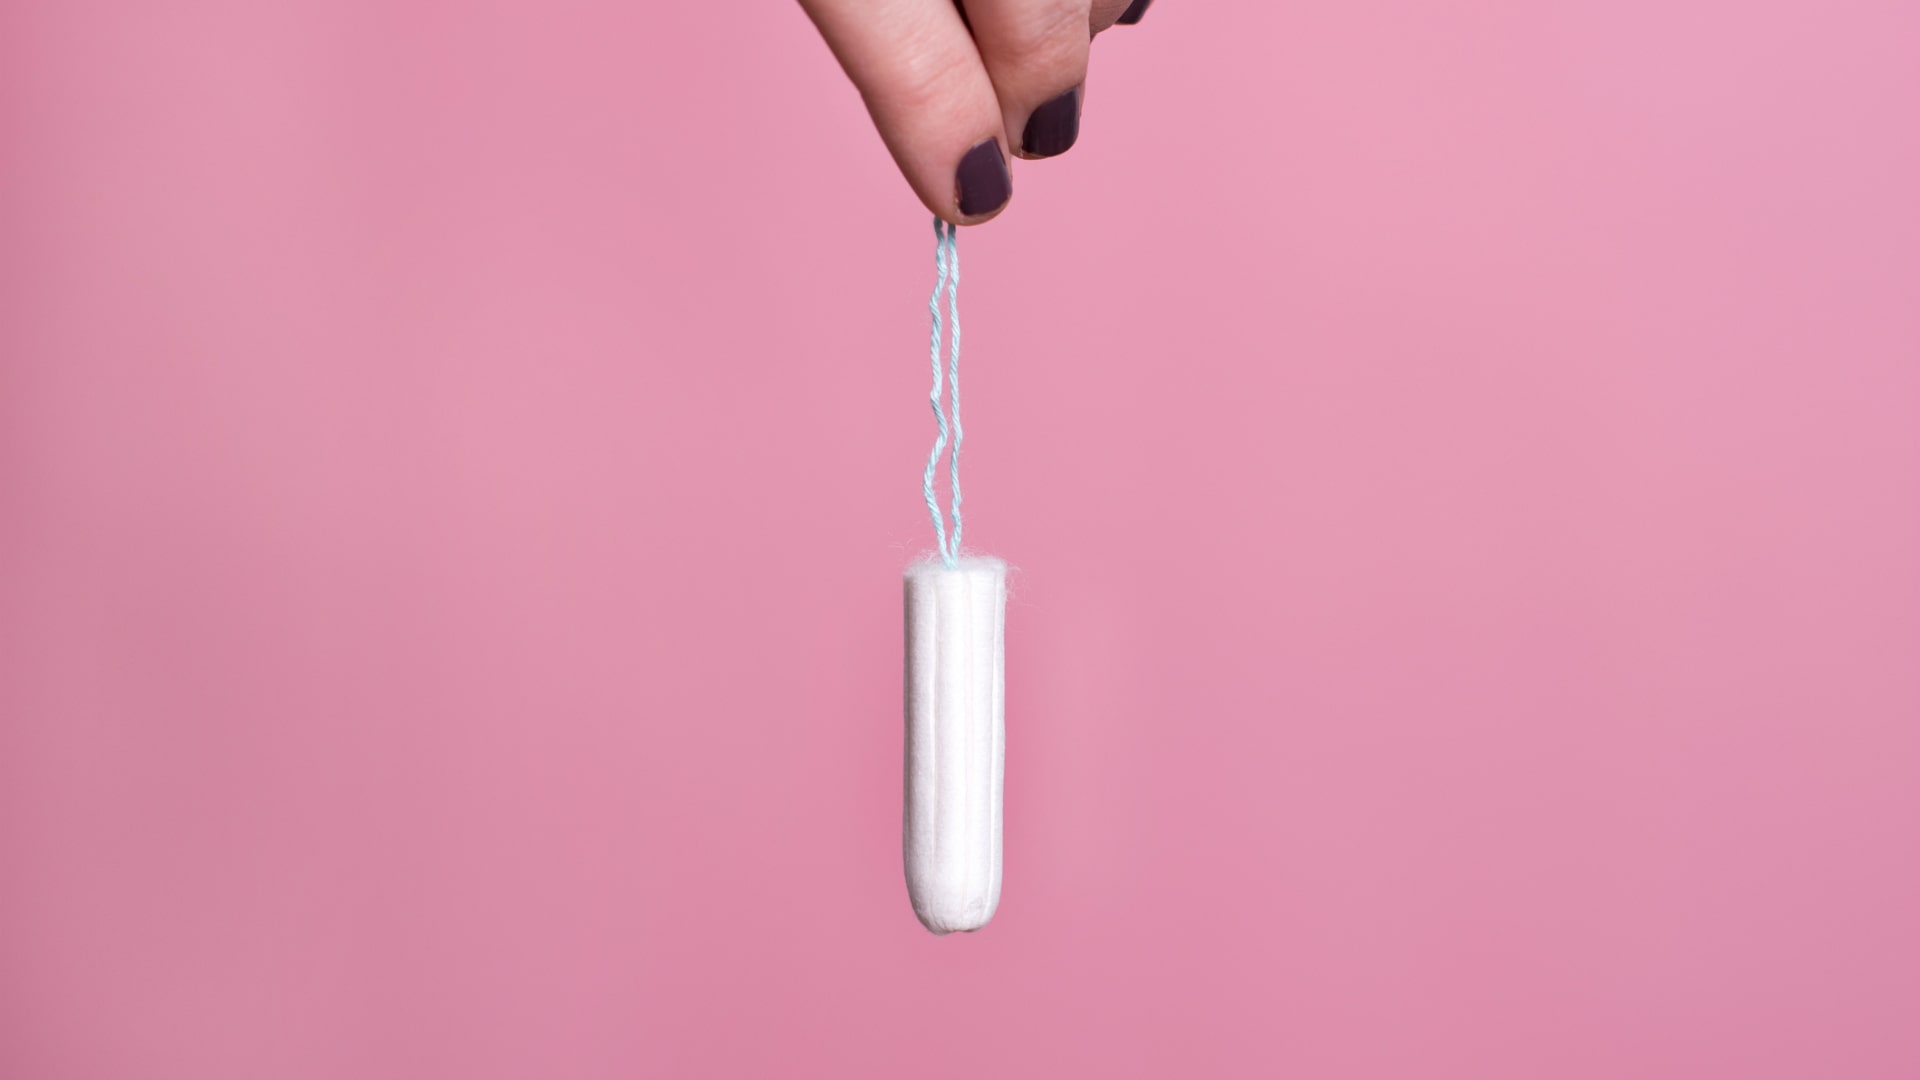 Foto de capa do artigo "11 mitos e verdades sobre menstruação: o atraso é normal?"